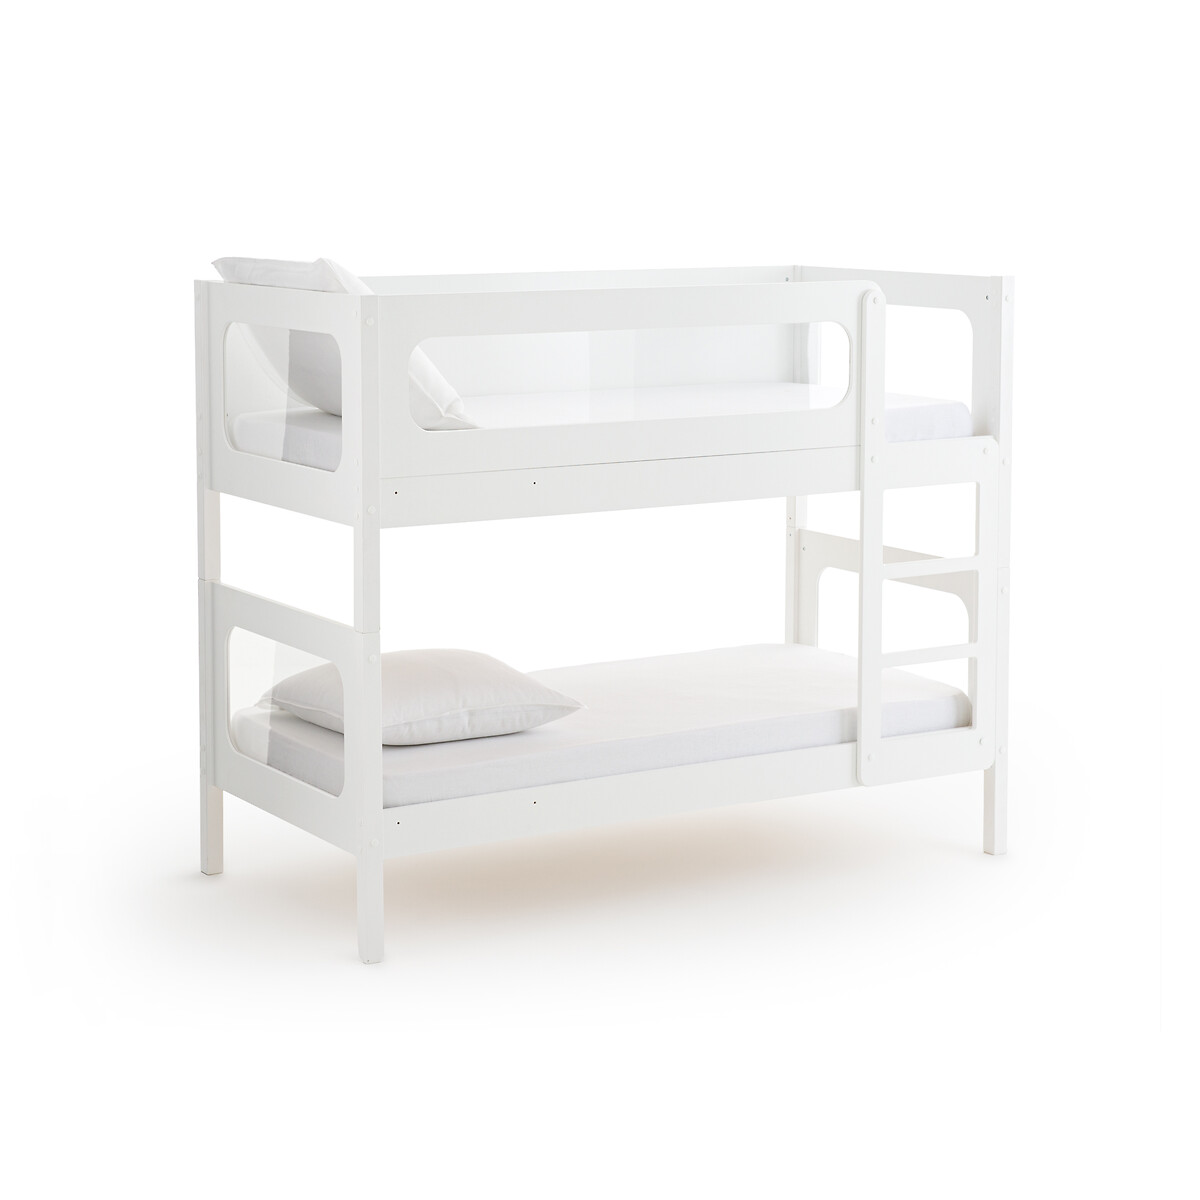 Кровать двухъярусная с кроватным основанием Pilha 90 x 190 см белый двухъярусная кровать из шпона дуба с пружинным блоком alceste 90 x 190 см каштановый